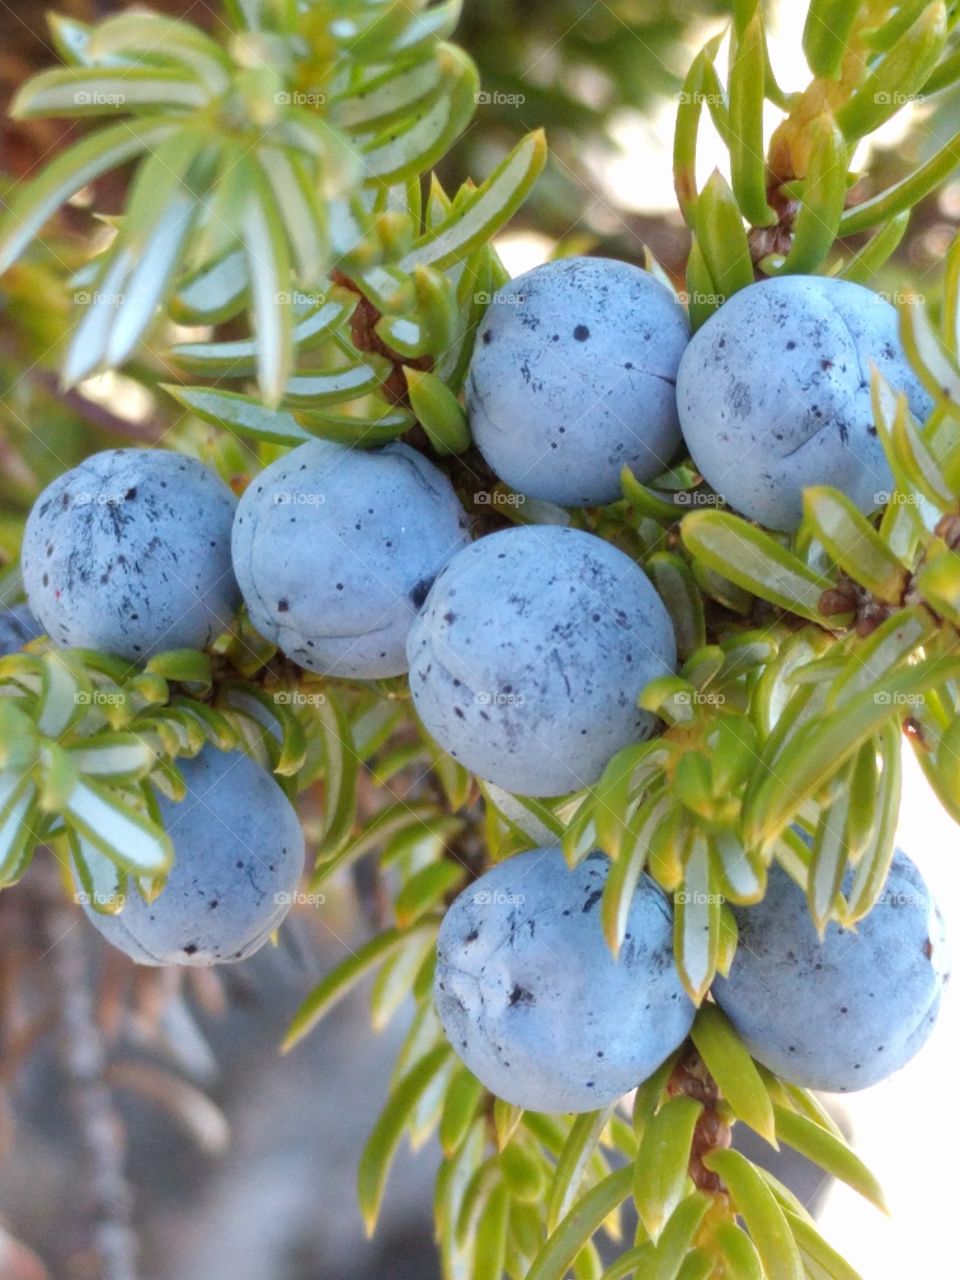 Common Juniper berries (Juniperus communis)